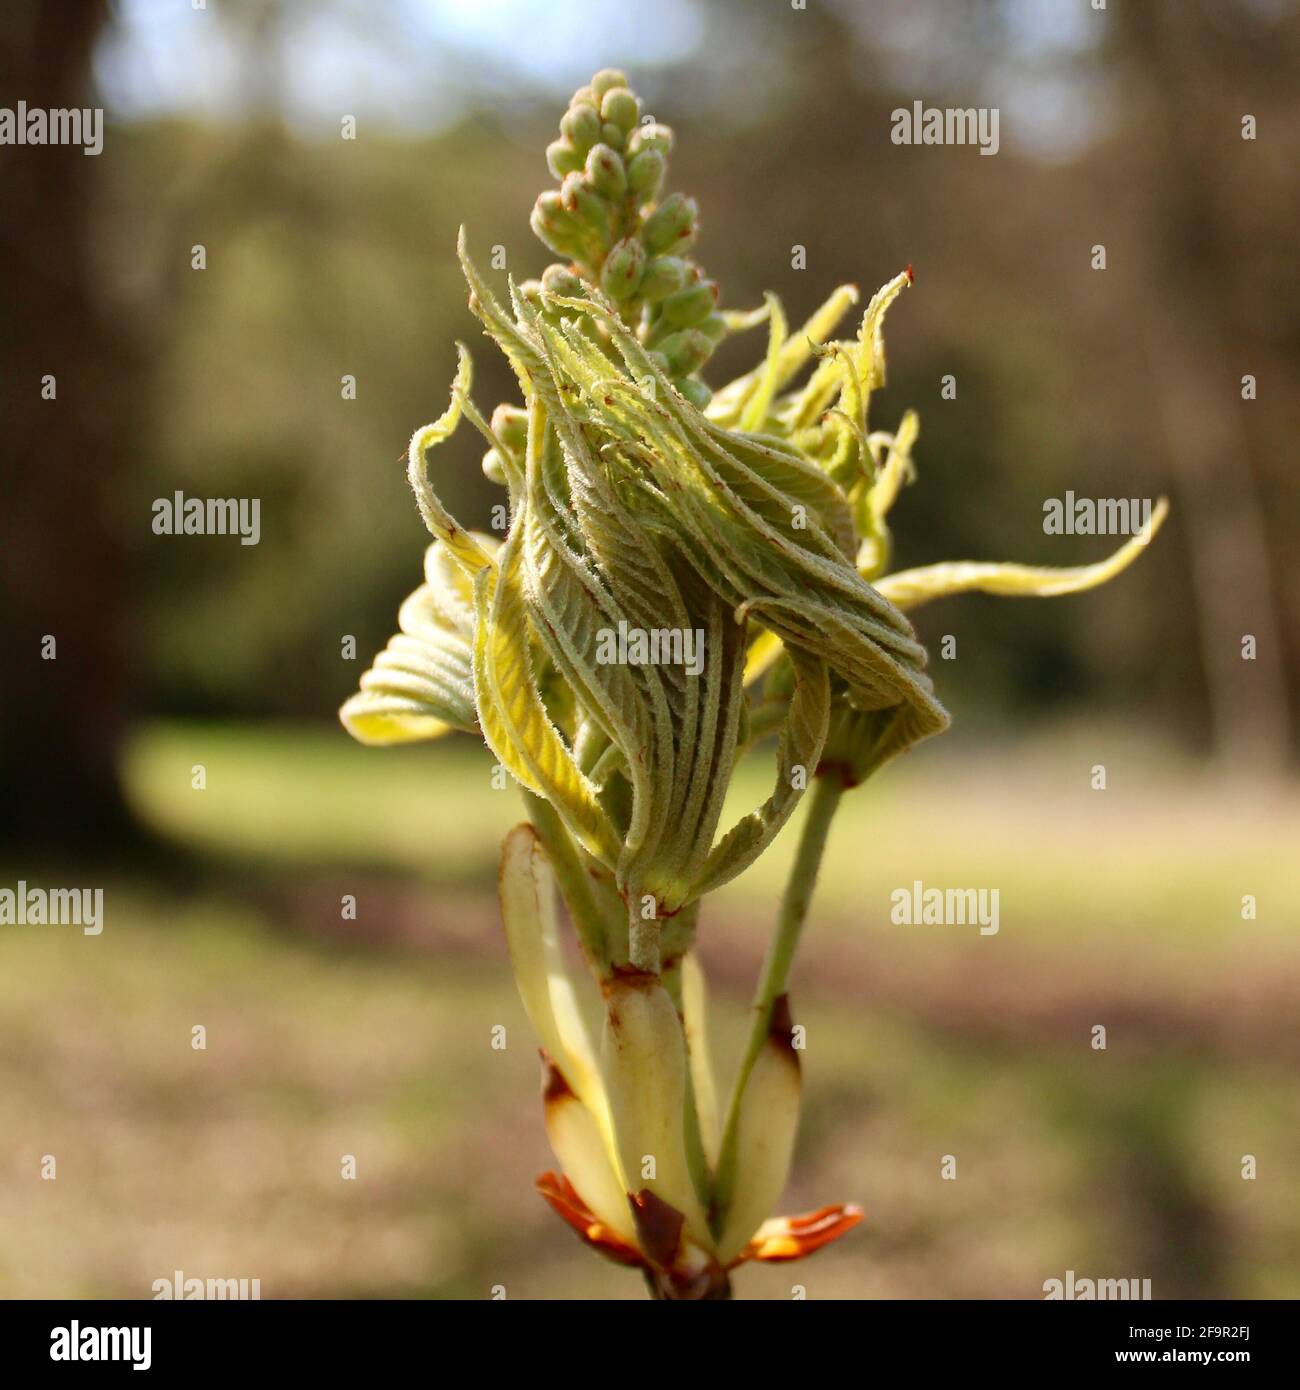 Scène du printemps en Angleterre des feuilles d'un châtaignier se désillonnant lentement. Banque D'Images